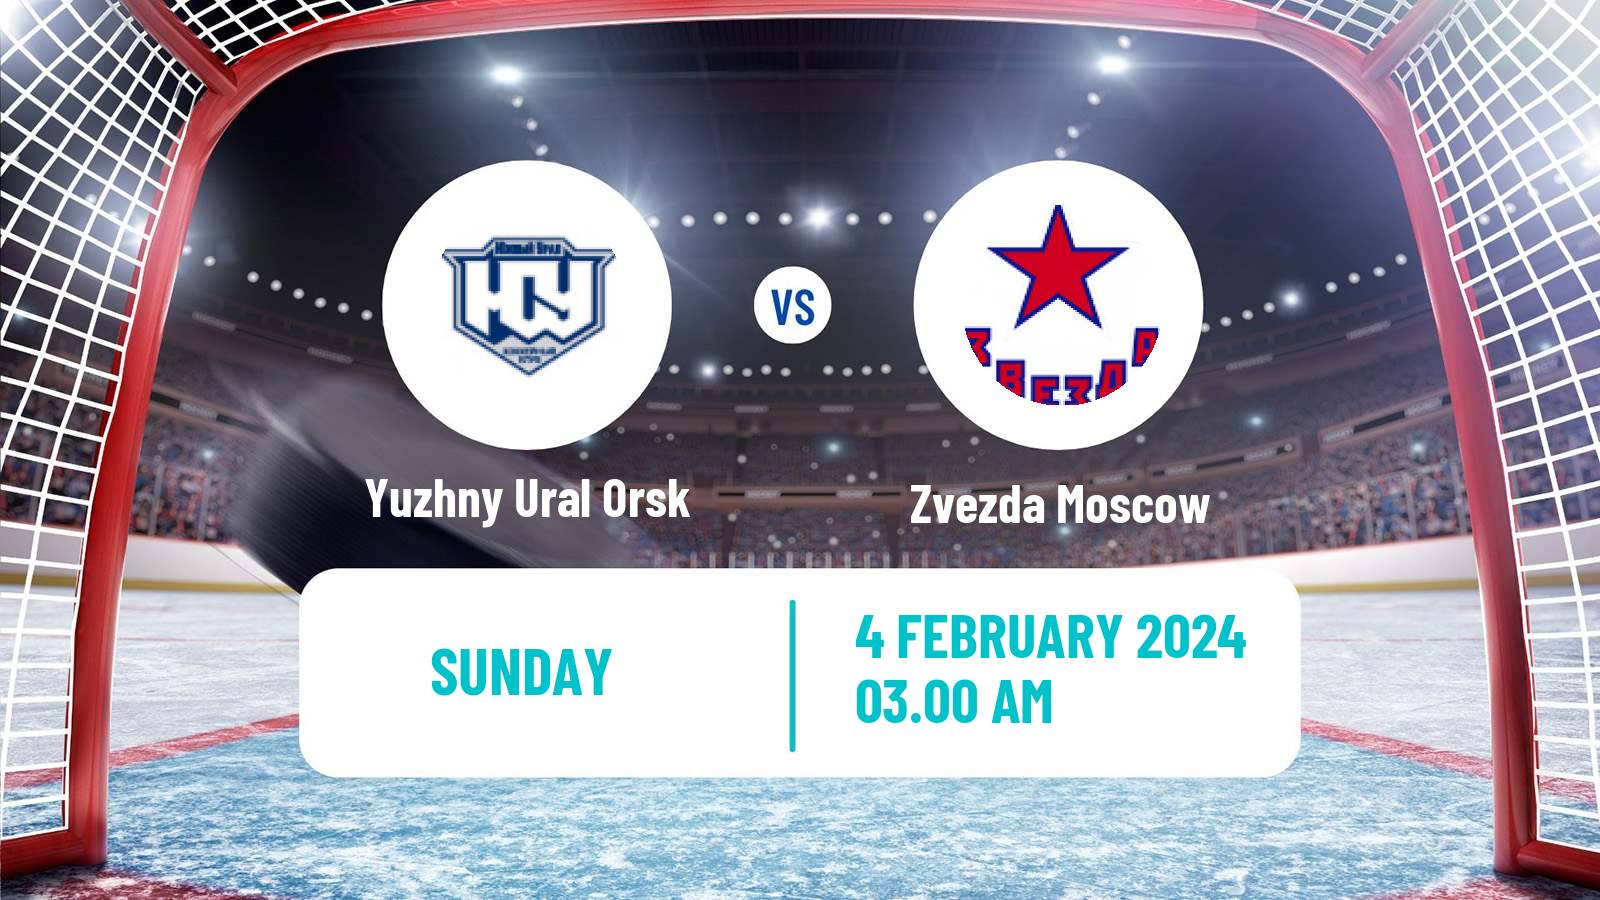 Hockey VHL Yuzhny Ural Orsk - Zvezda Moscow